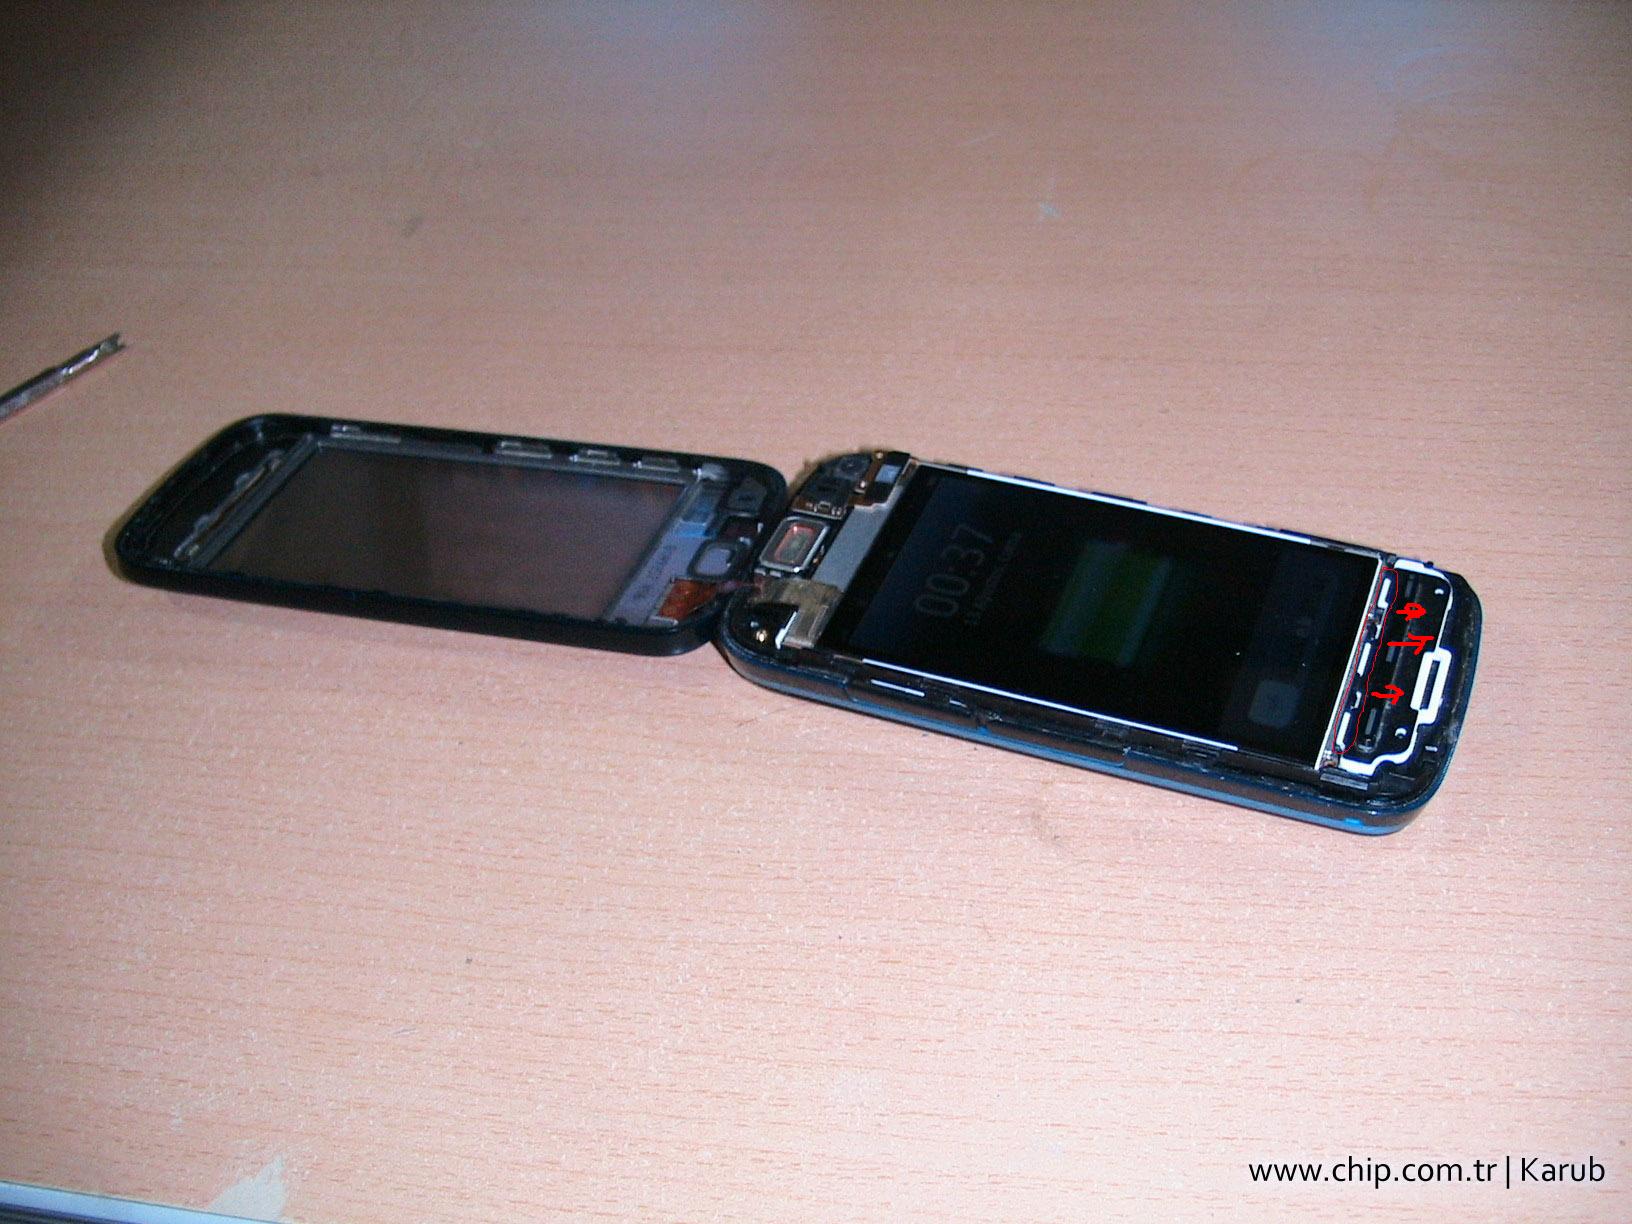  Nokia 5800 İç temizlik anlatımı (resimli)